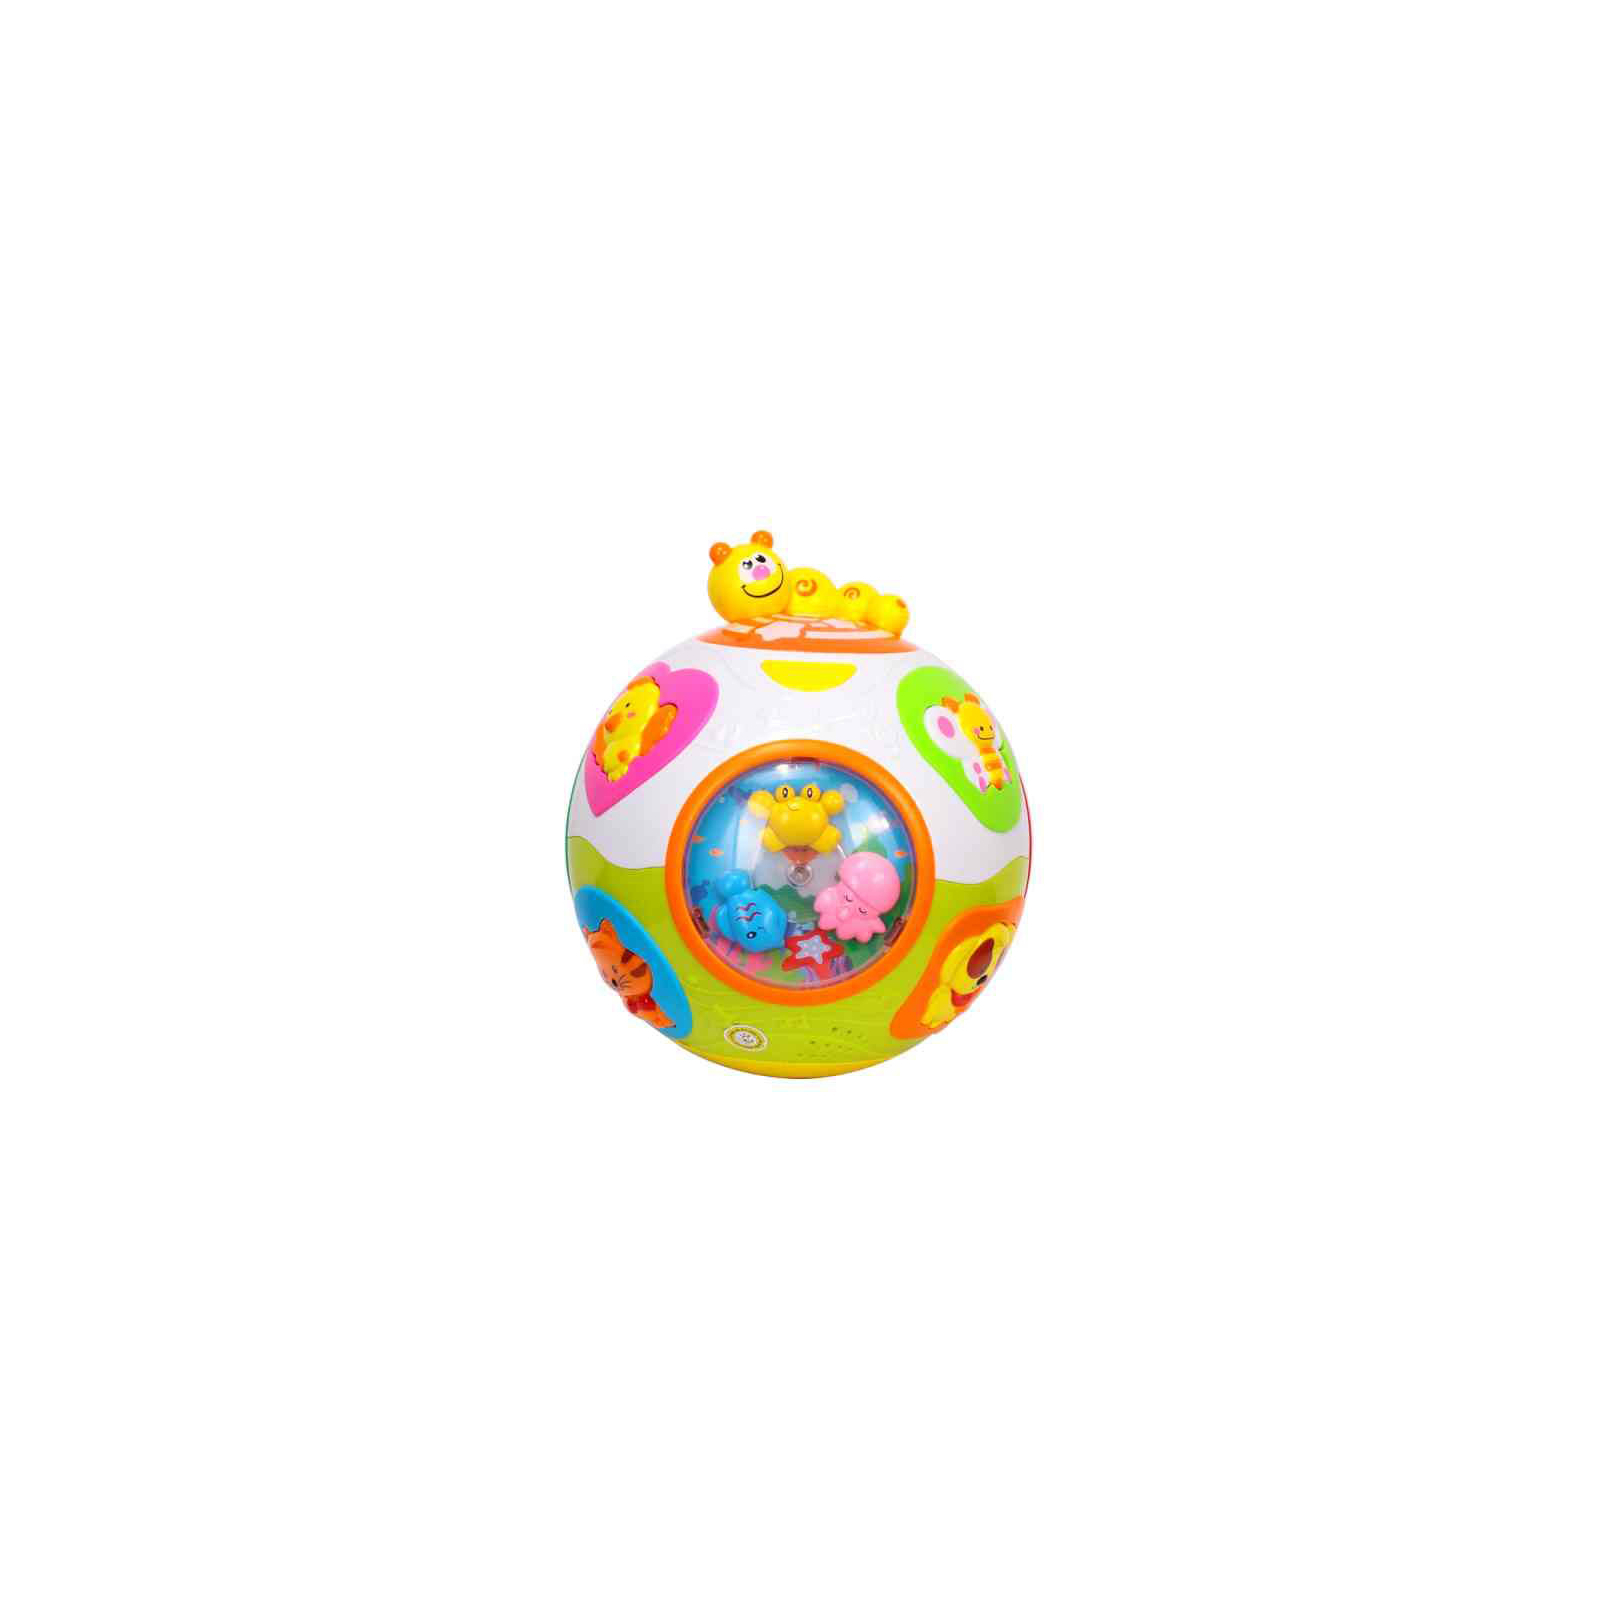 Развивающая игрушка Huile Toys Счастливый мячик (938) изображение 2